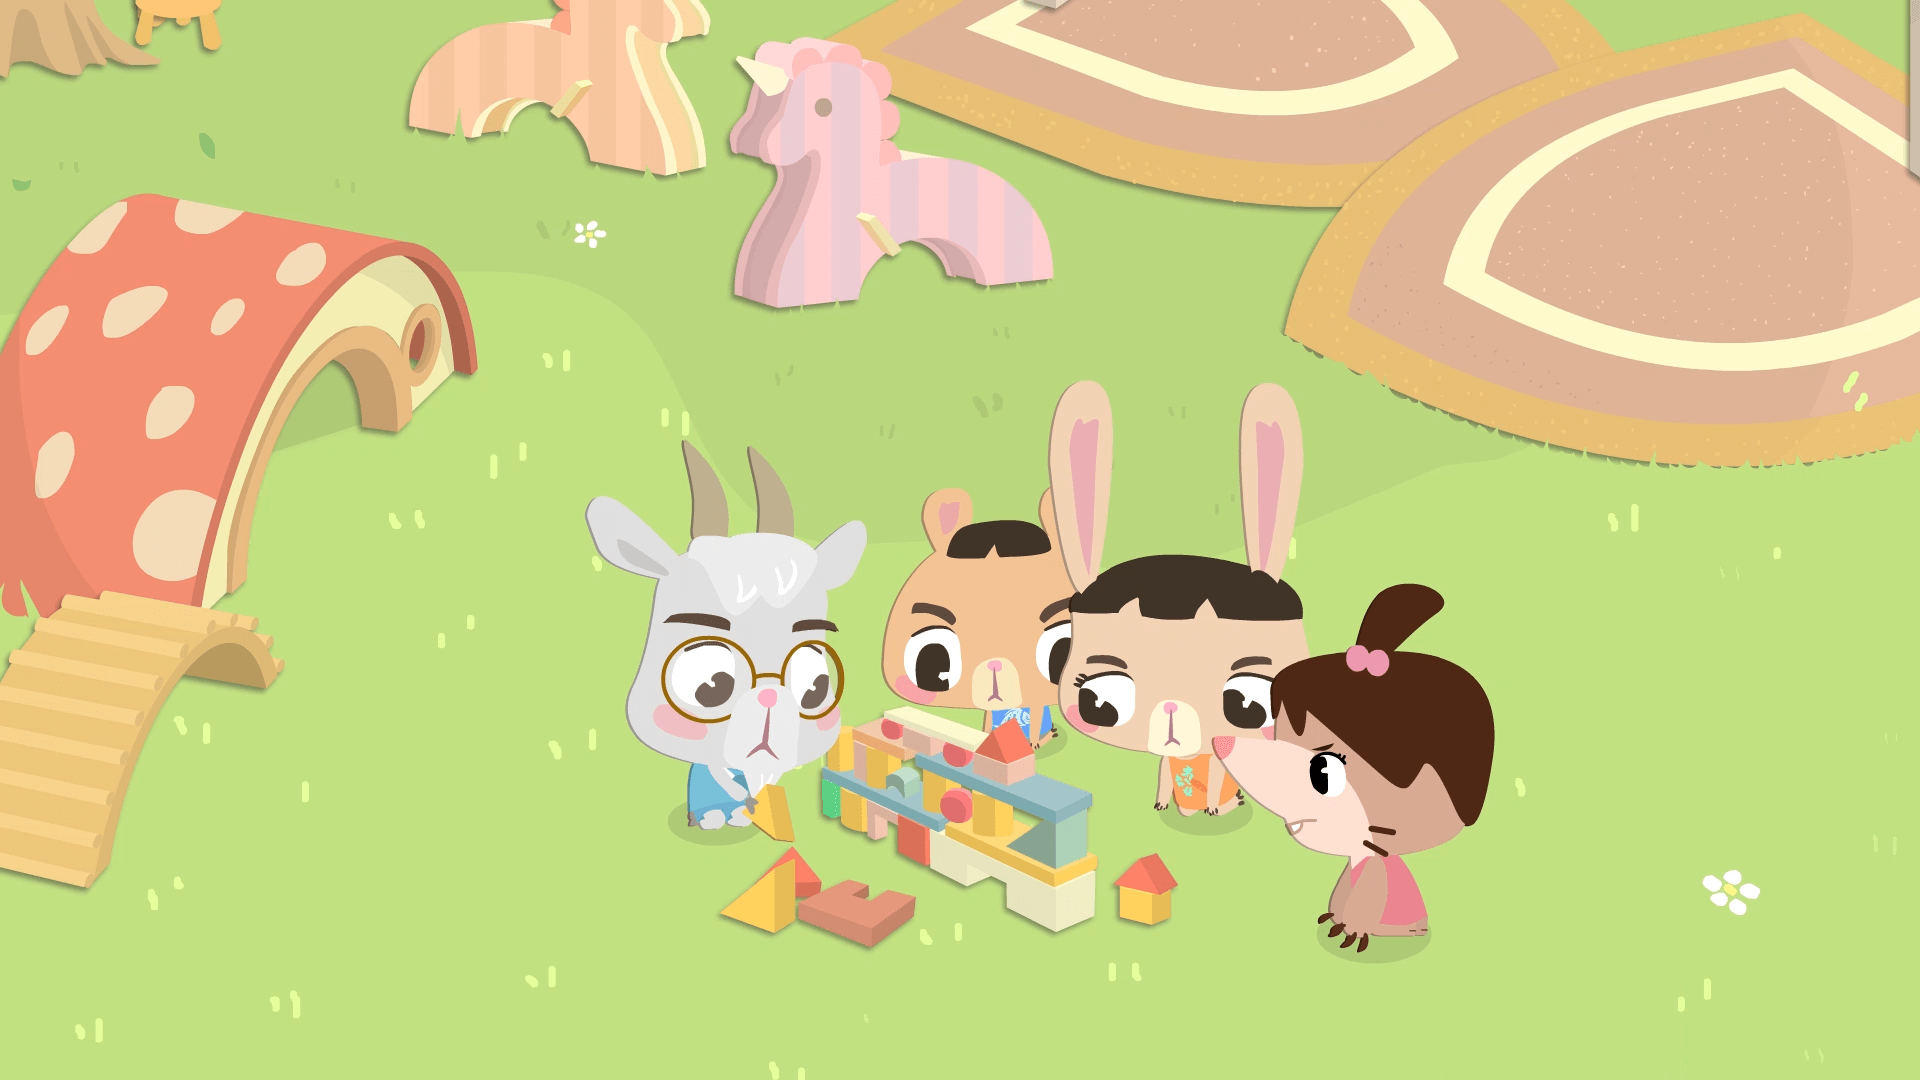 贝贝,淘淘和幼儿园的小朋友们一起玩搭积木游戏